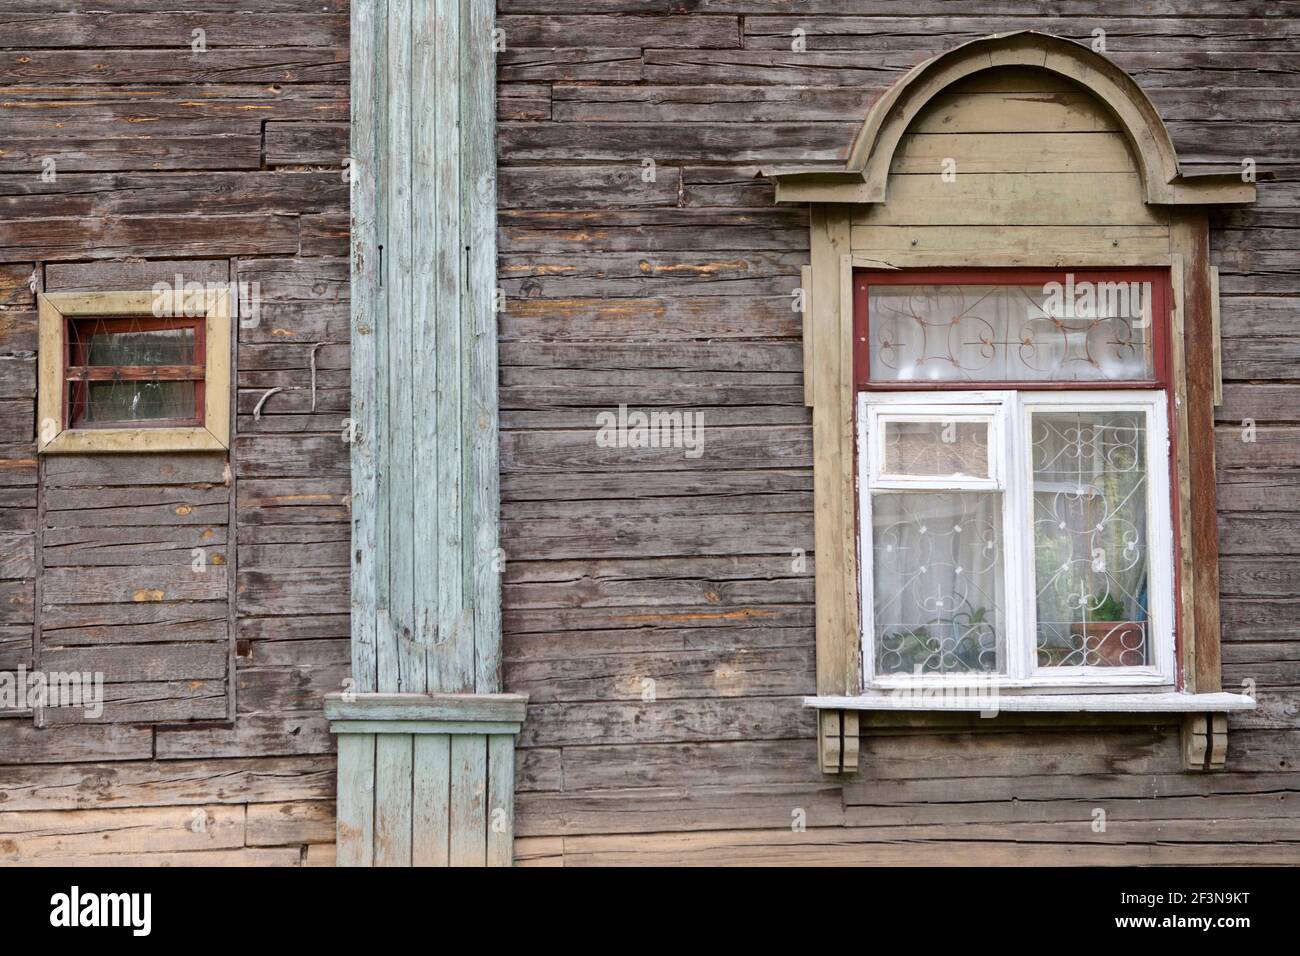 In alcune zone di Ekaterinburg vi sono molti edifici tradizionali in disuso, dato che le persone si sono spostate fuori dalle aree industriali, per trovare lavoro e nuove vite. Foto Stock